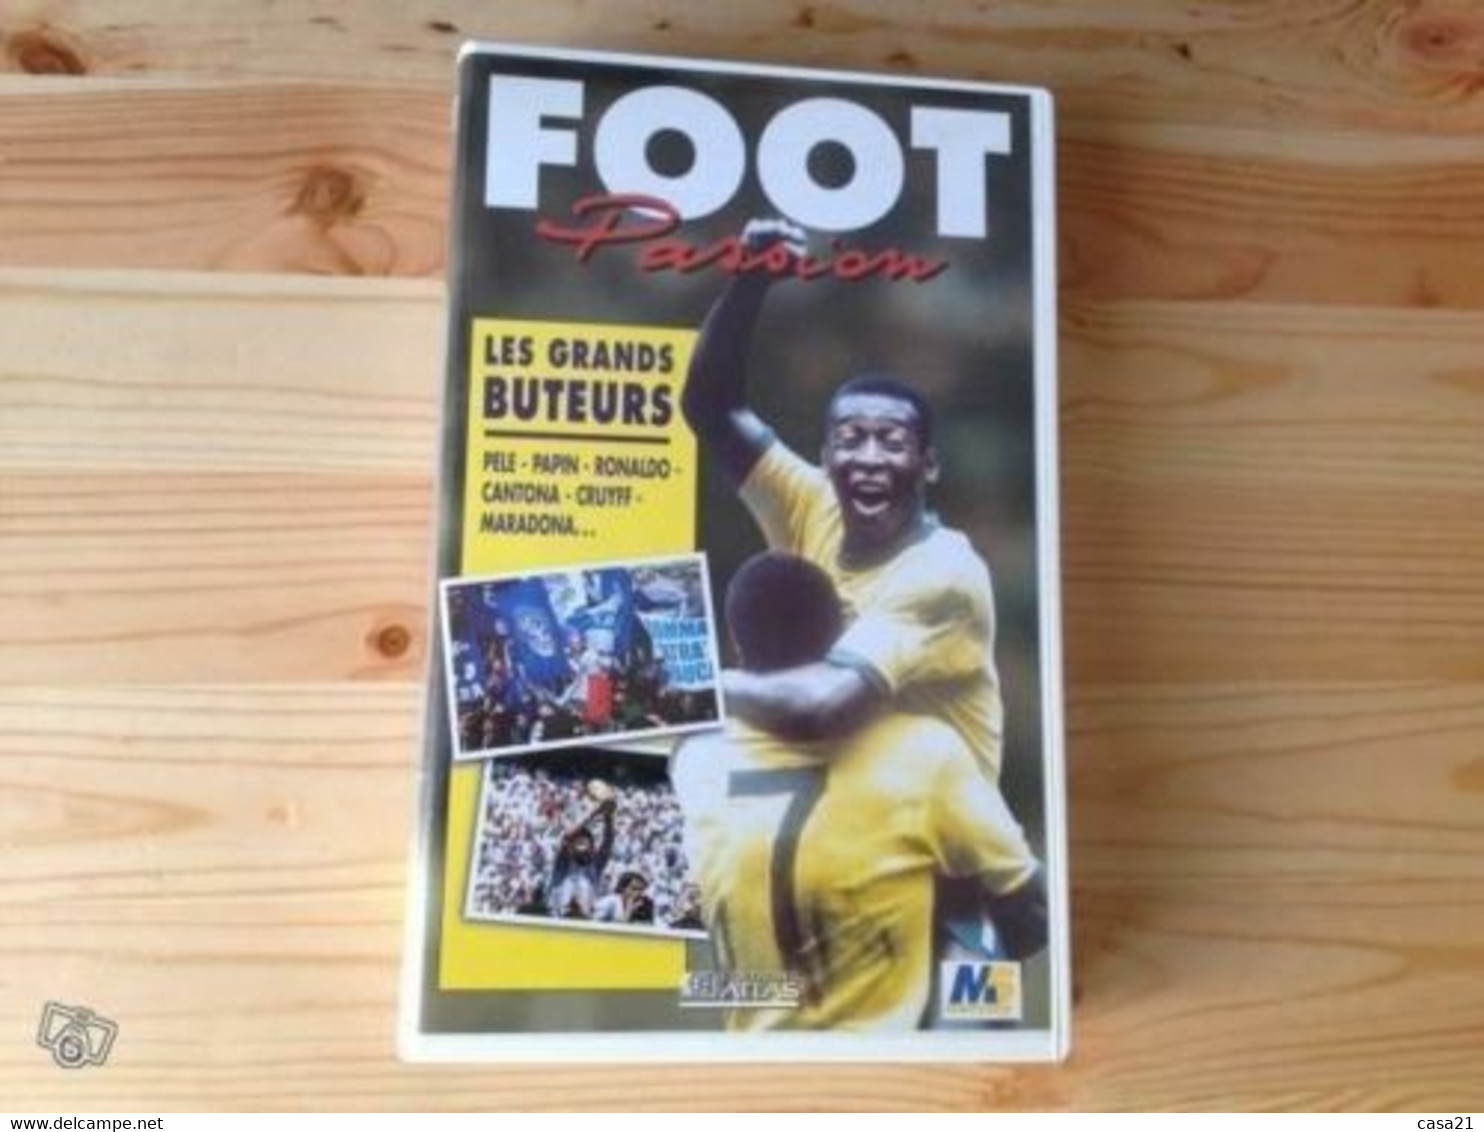 Foot Passion - Les Grands Buteurs (VHS) - Sport